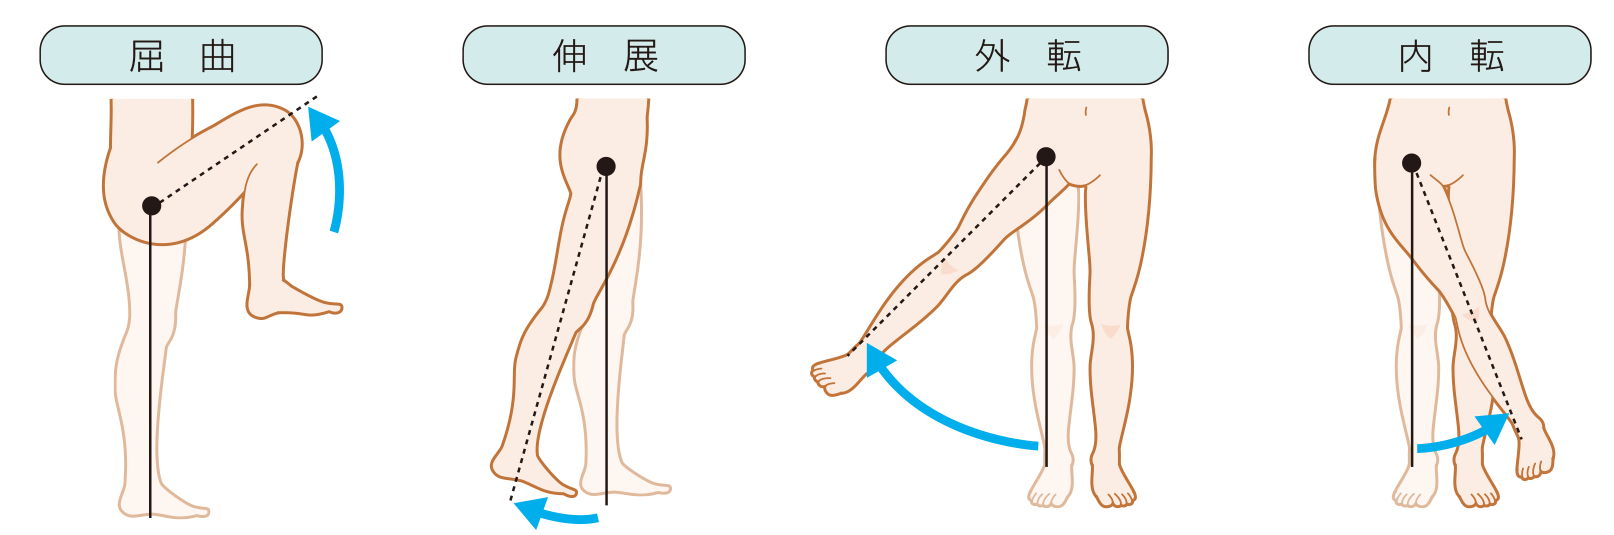 股関節の外転、内転、伸展、屈曲の動き